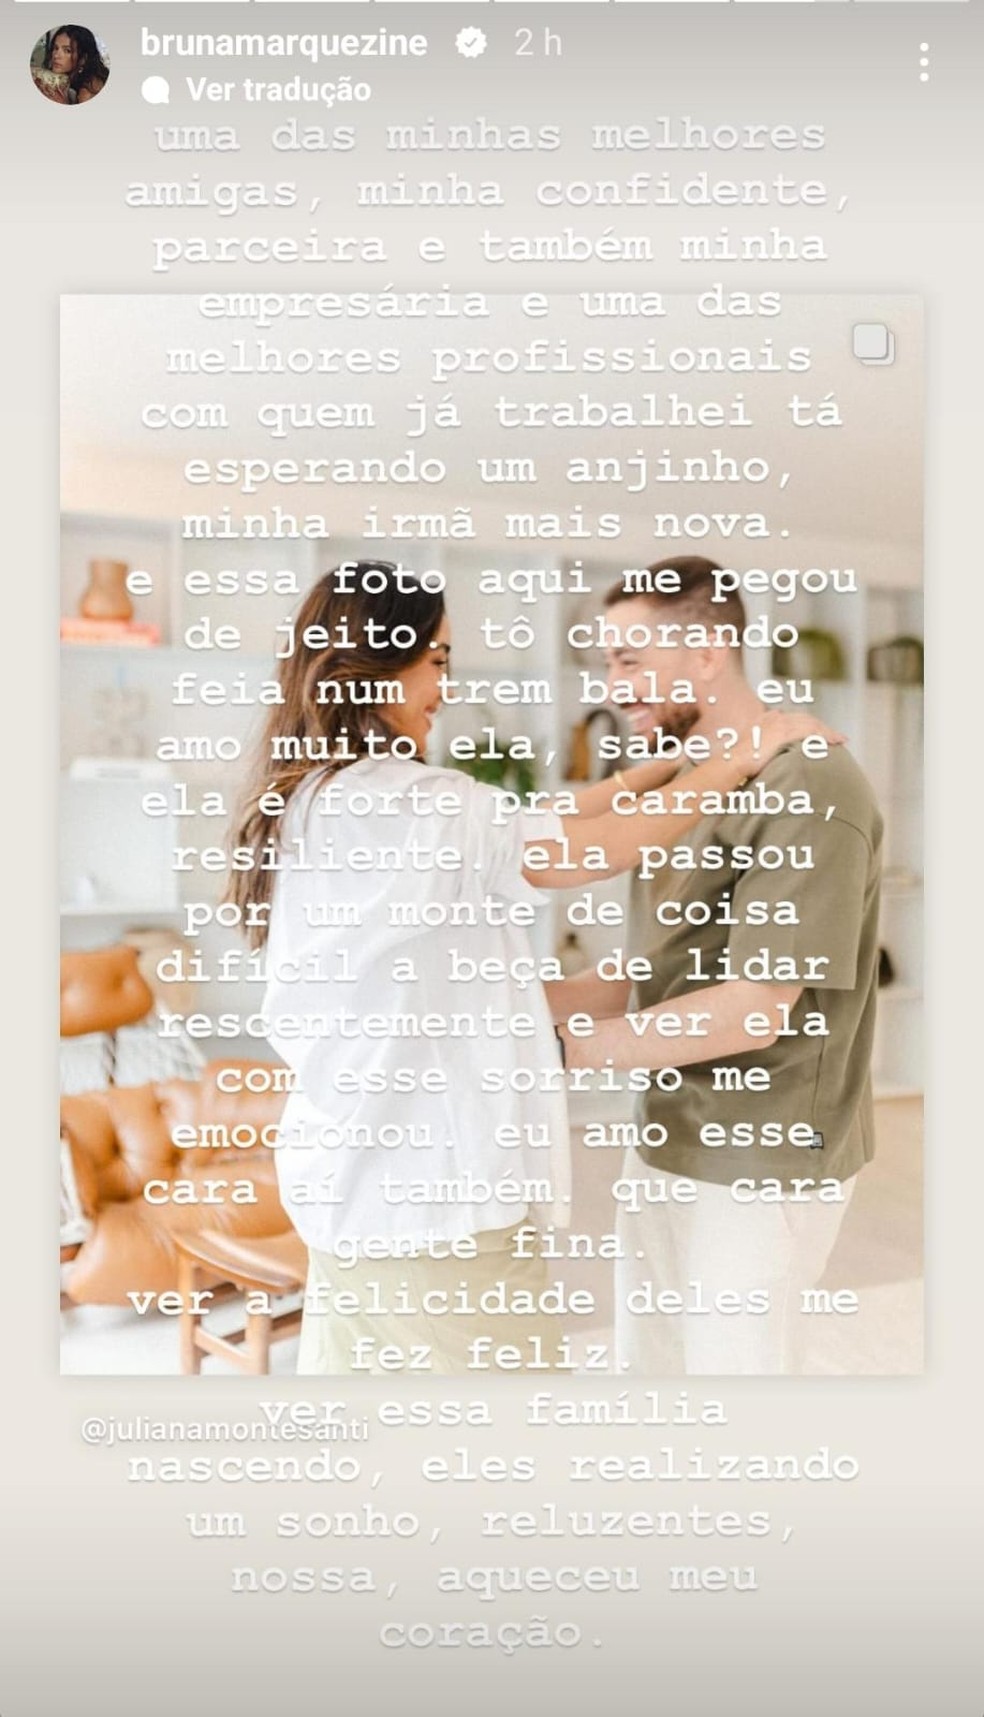 Bruna Marquezine se emociona com sua empresária, Juliana Montesanti, grávida — Foto: Reprodução/Instagram e Pitanga Fotografia